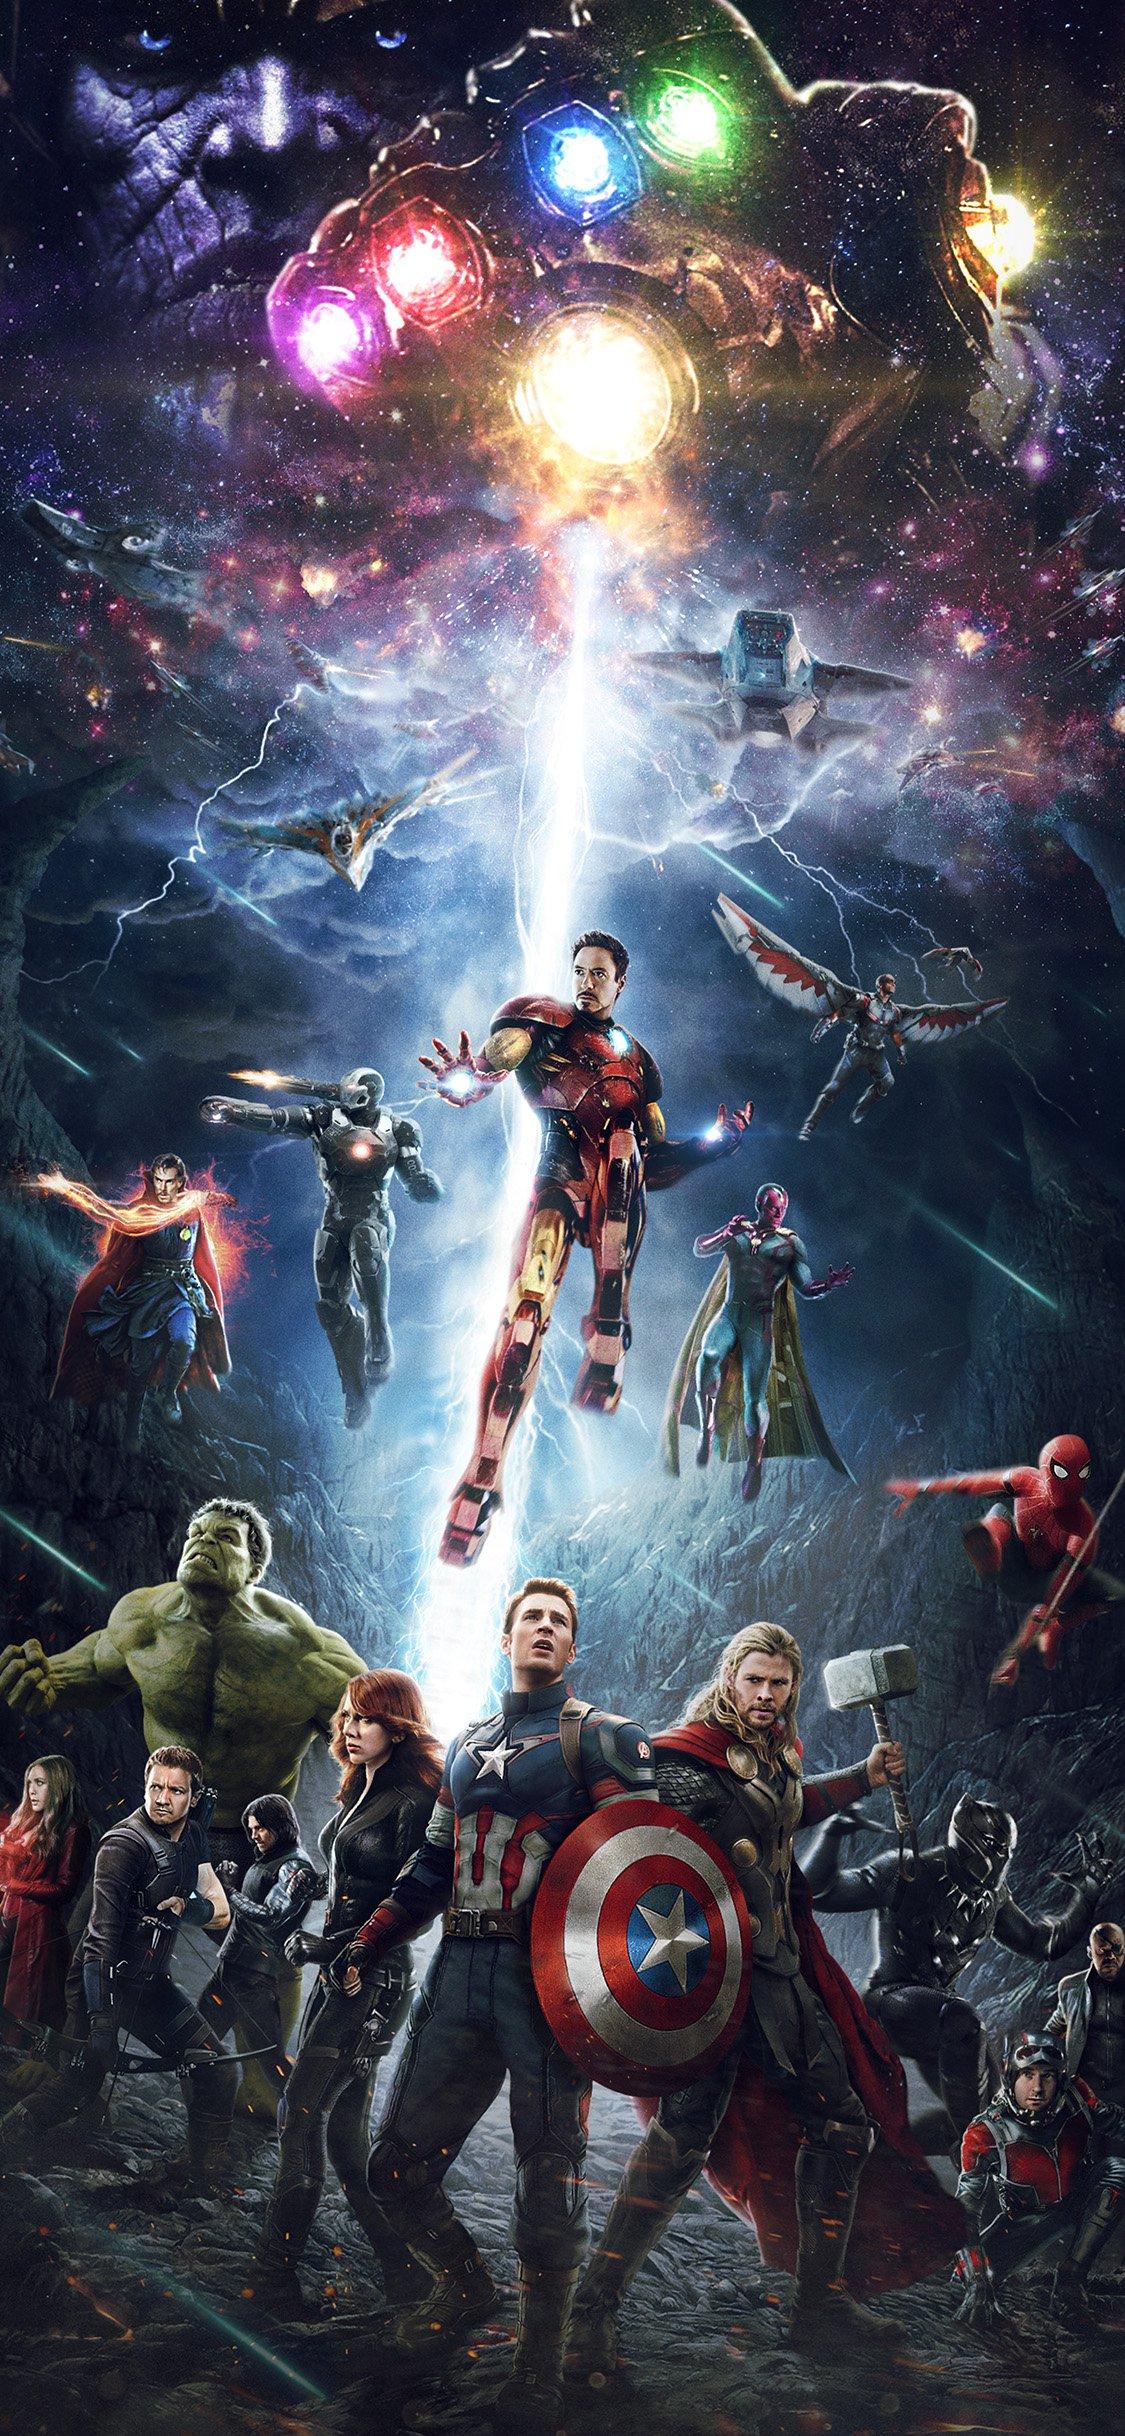 Avengers Wallpaper for desktop  Avengers wallpaper Marvel background  Marvel images